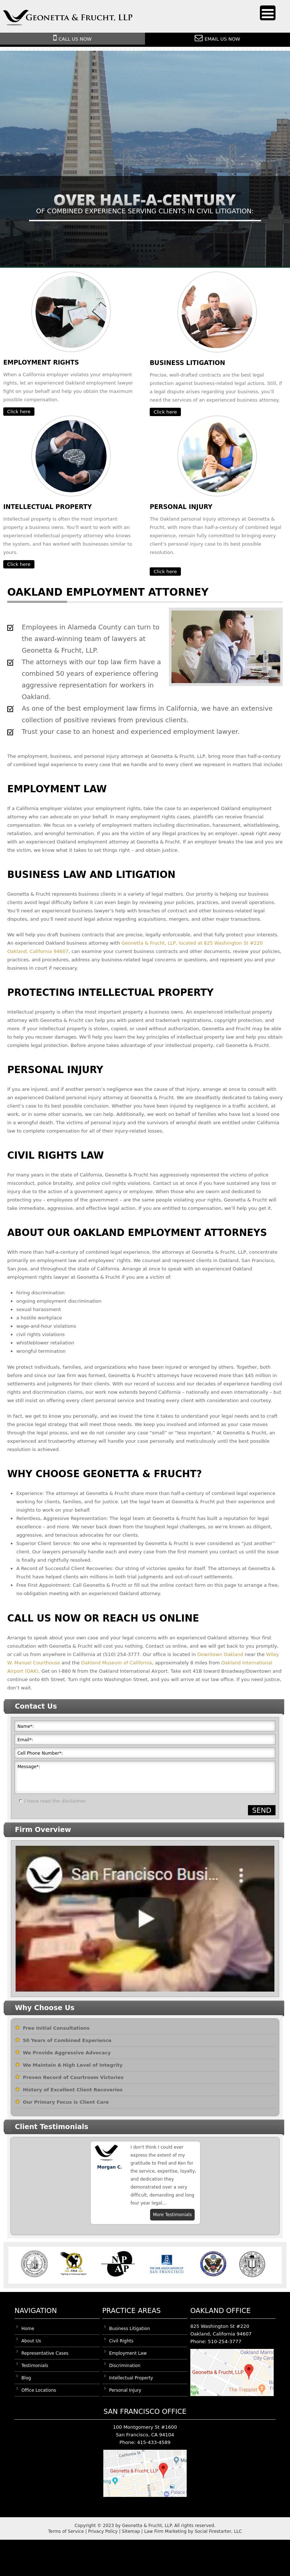 Geonetta & Frucht, Oakland - Oakland CA Lawyers